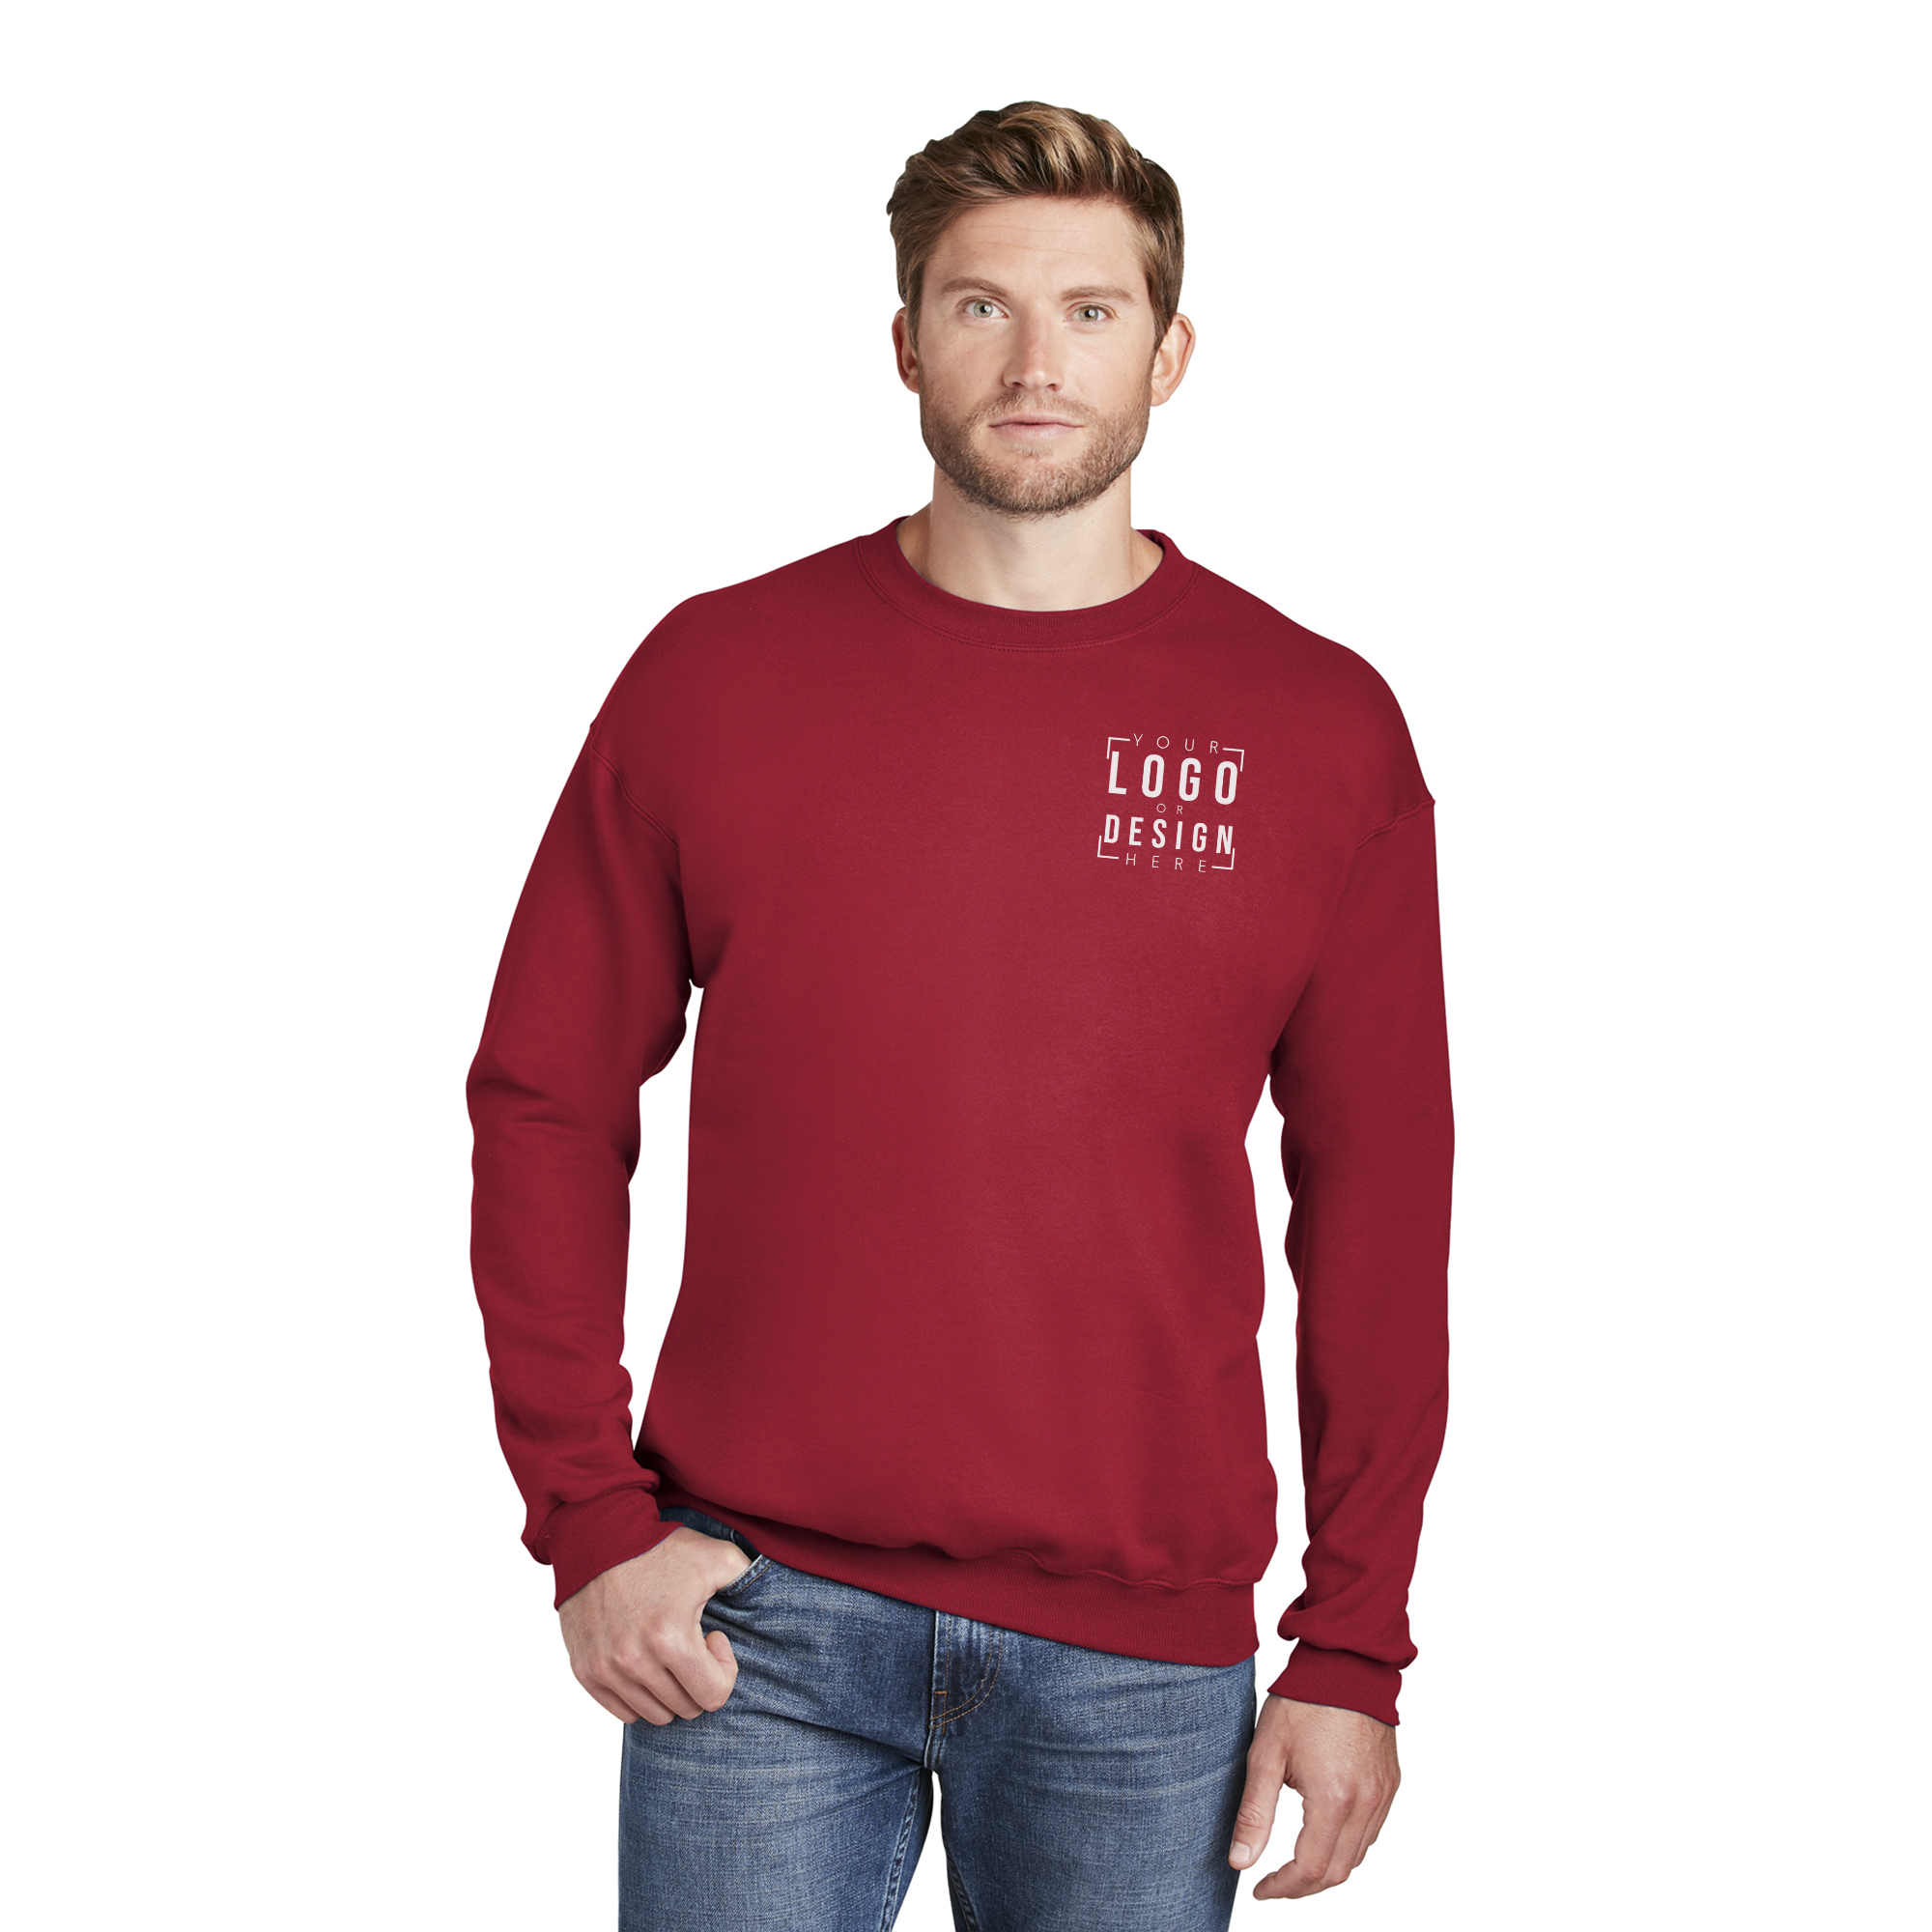 Hanes Ultimate Cotton - Crewneck Sweatshirt